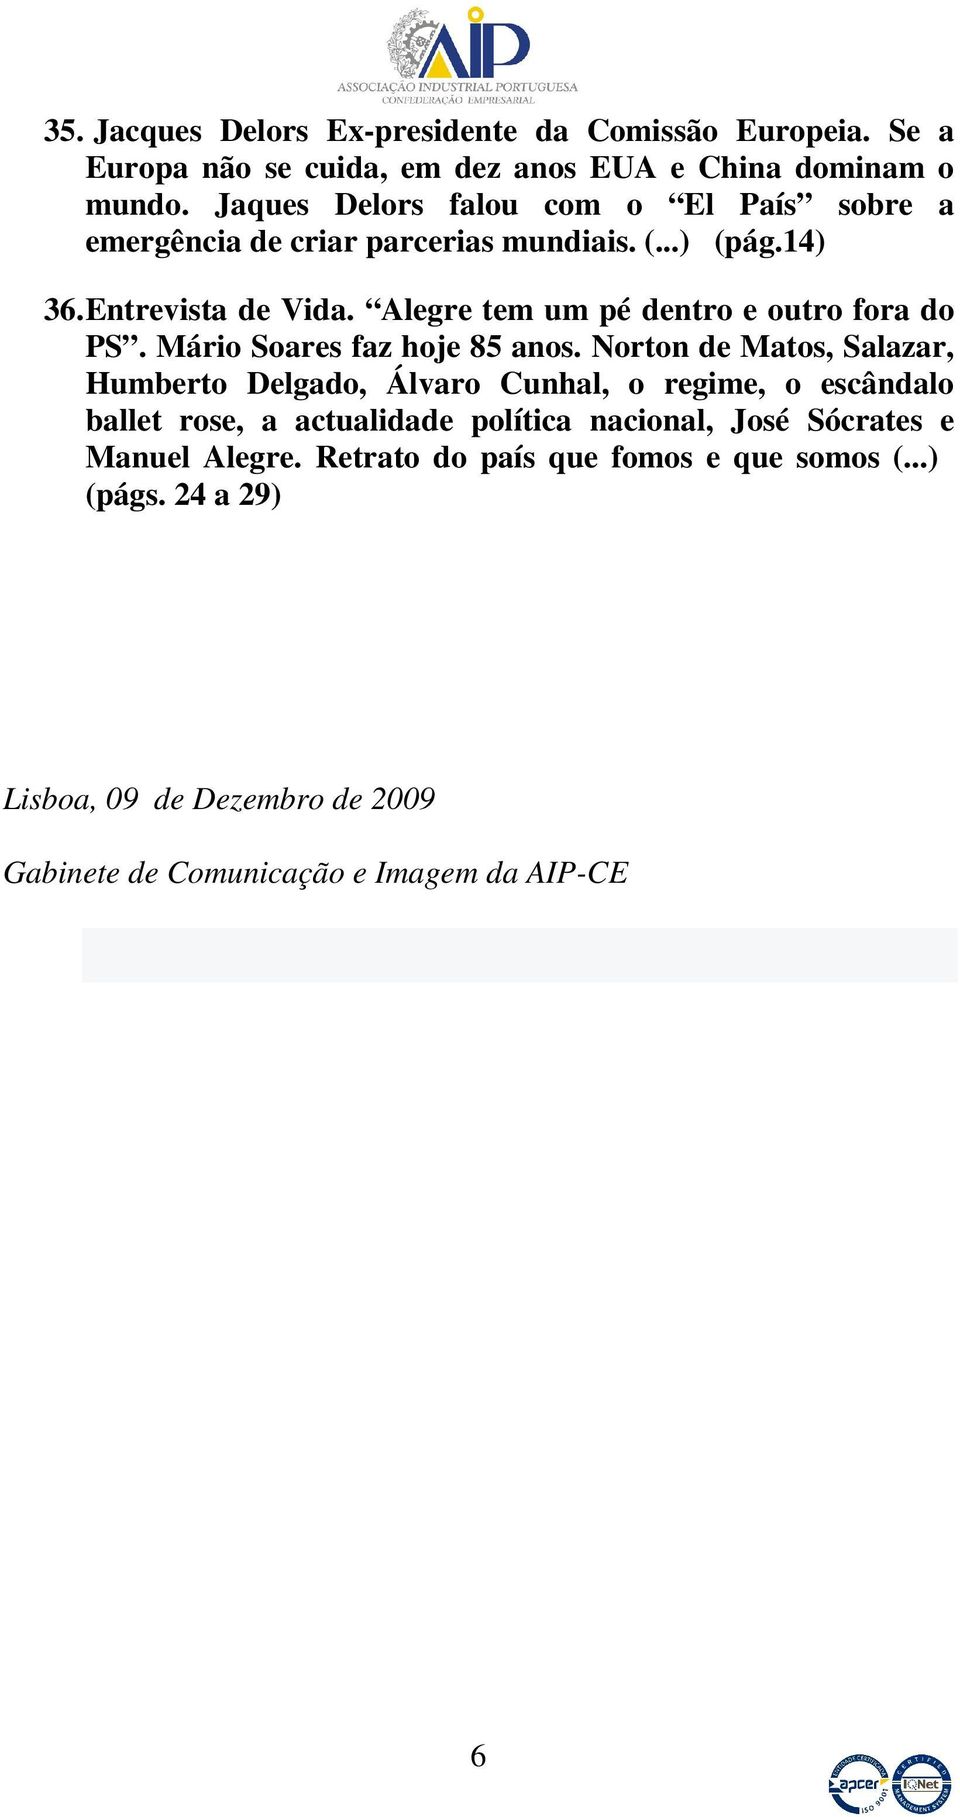 Alegre tem um pé dentro e outro fora do PS. Mário Soares faz hoje 85 anos.